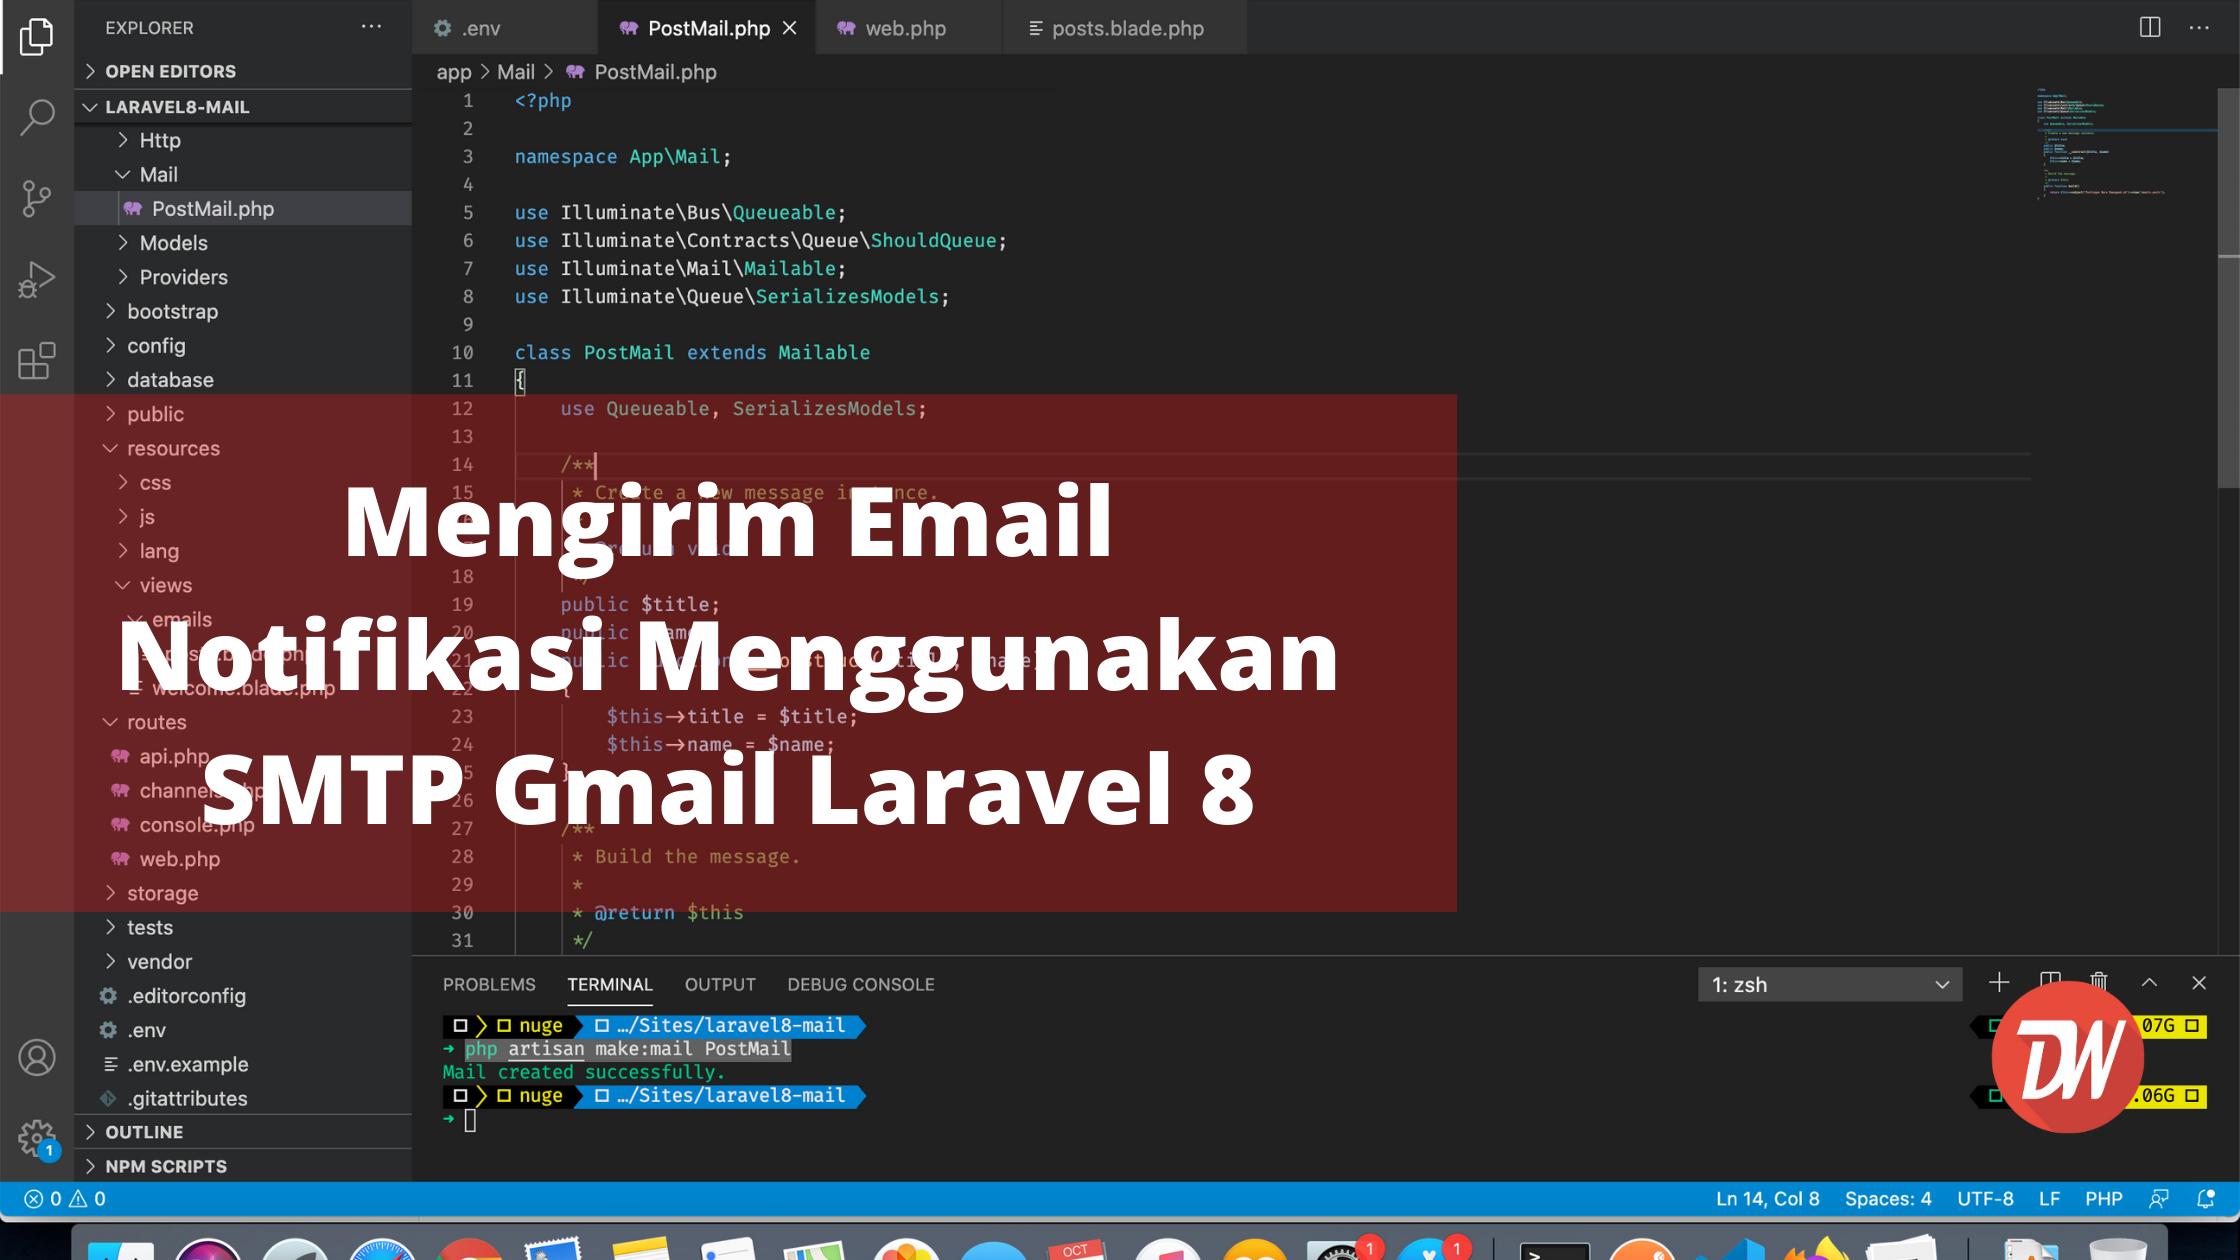 Mengirim Email Notifikasi Menggunakan SMTP Gmail Laravel 8